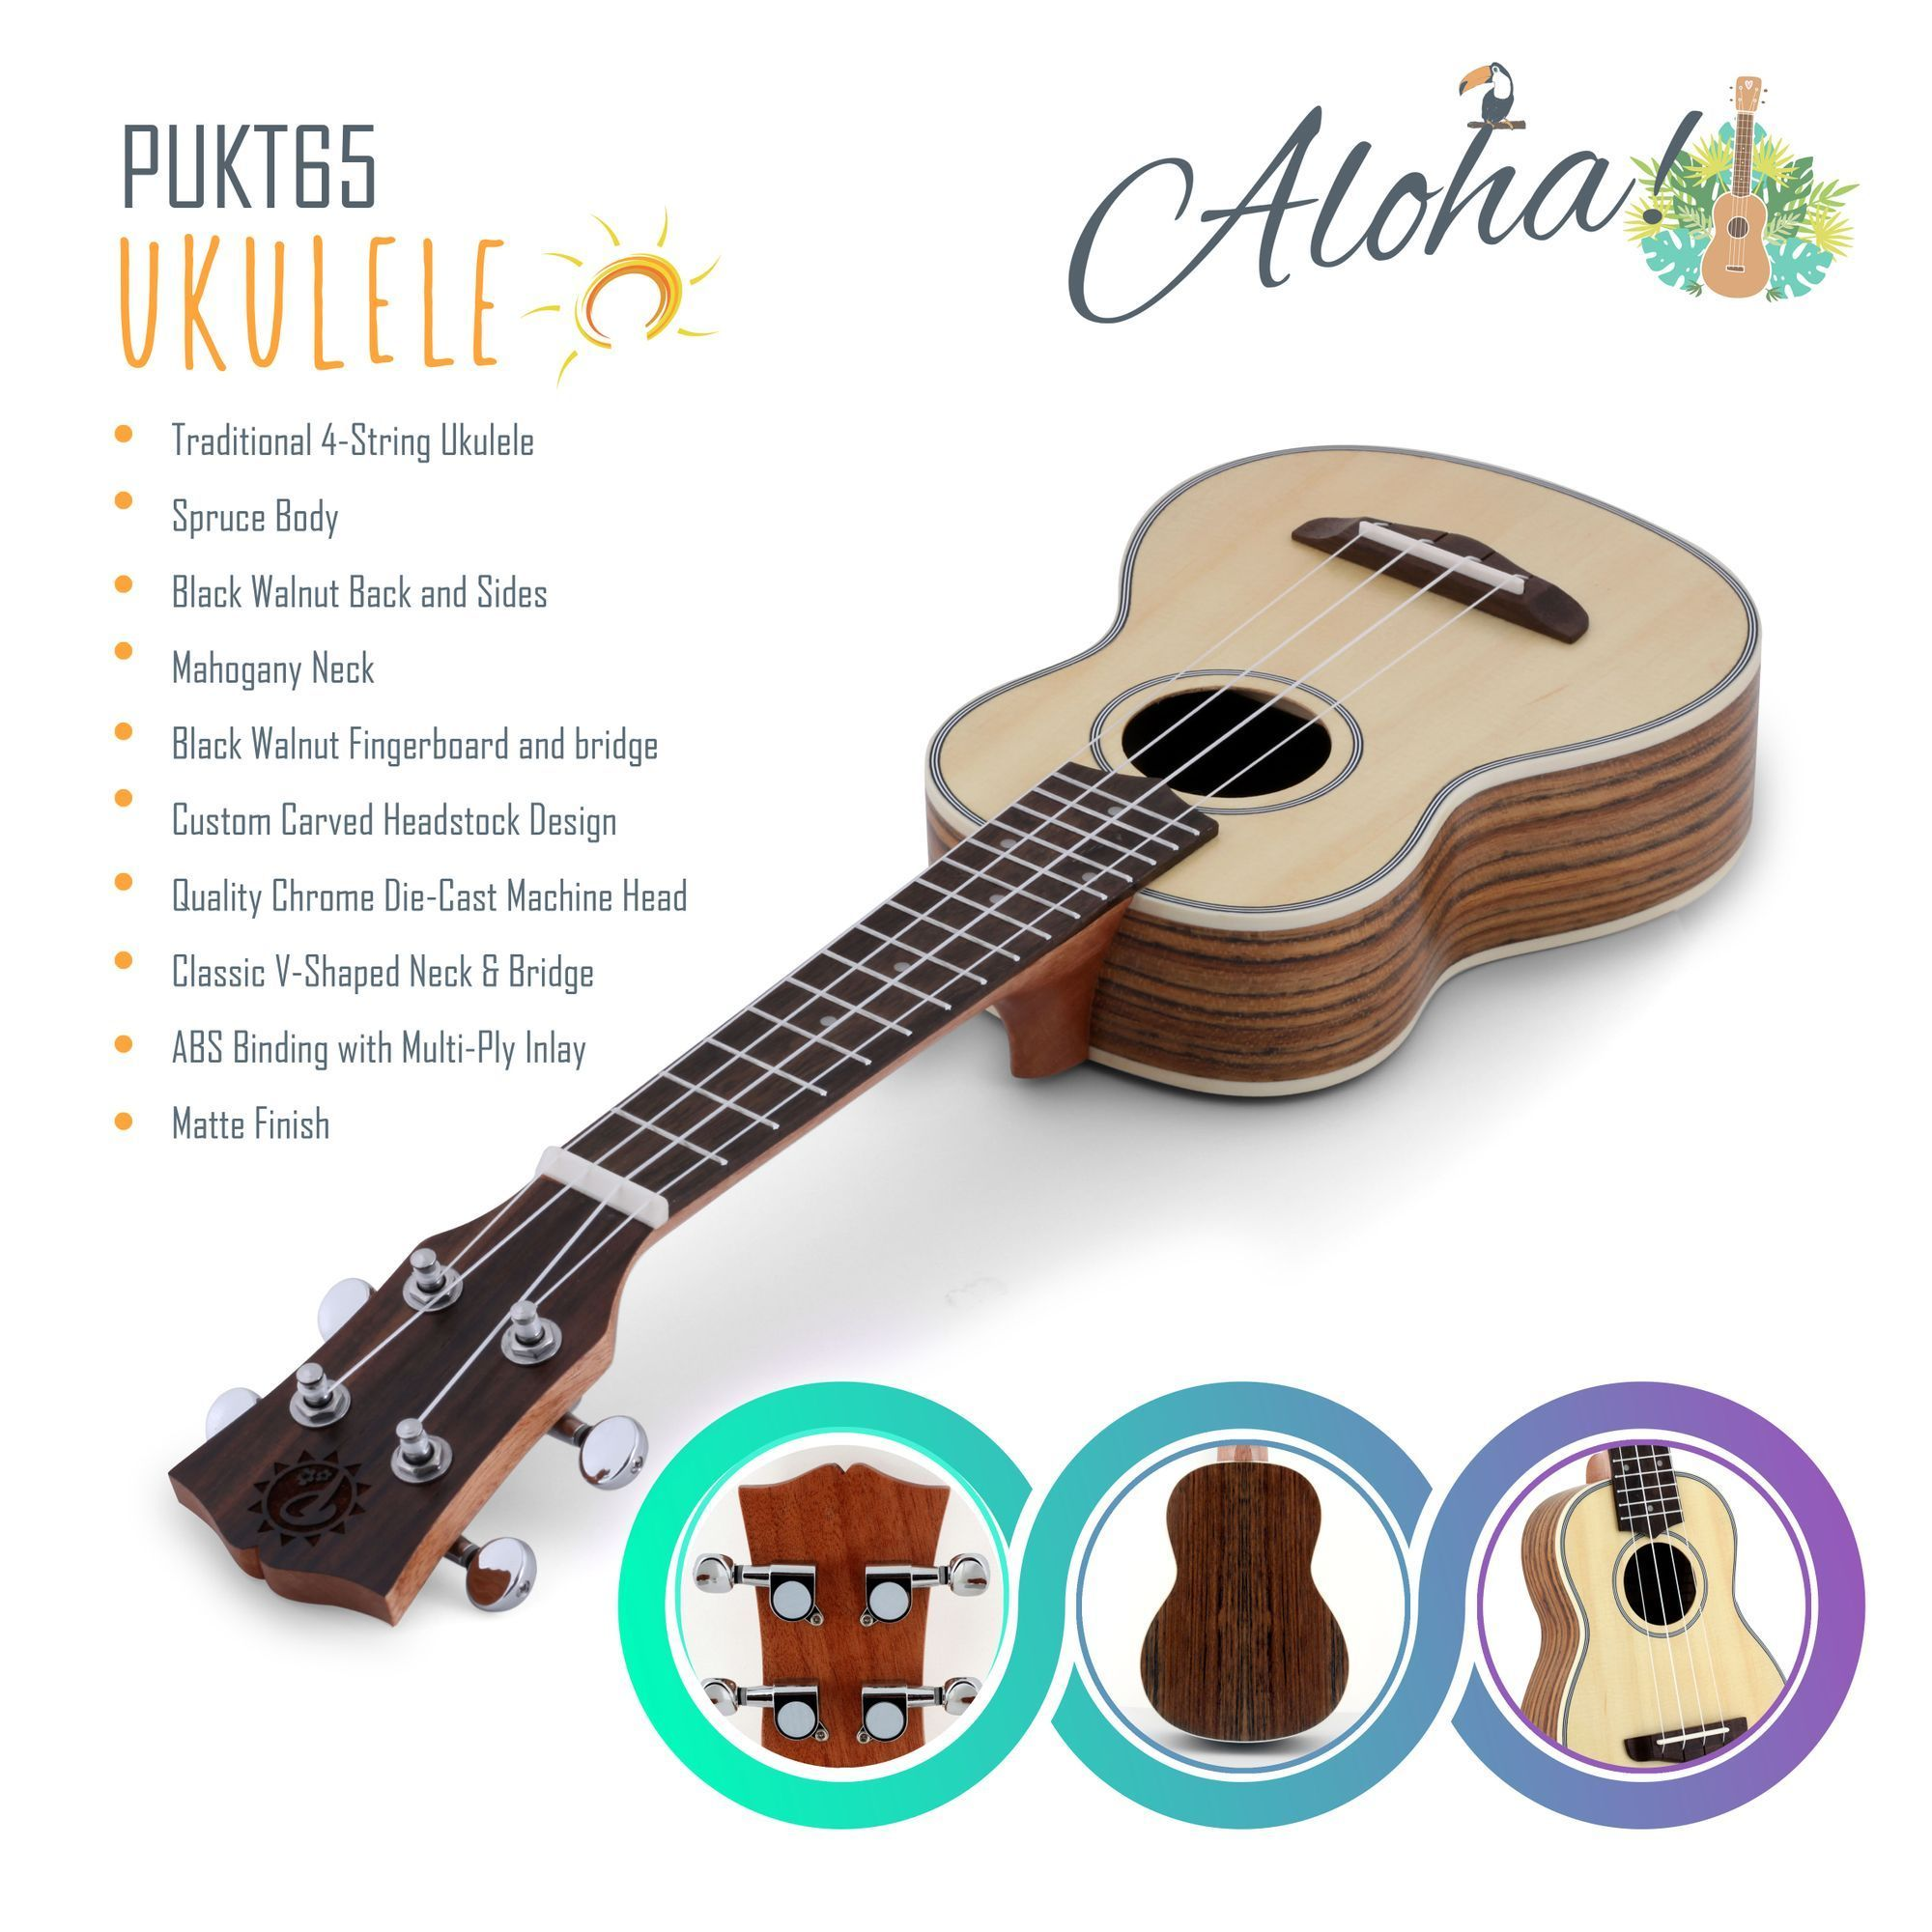 Pyle Soprano Ukulele - Traditional 4-String Ukulele (PUKT65)